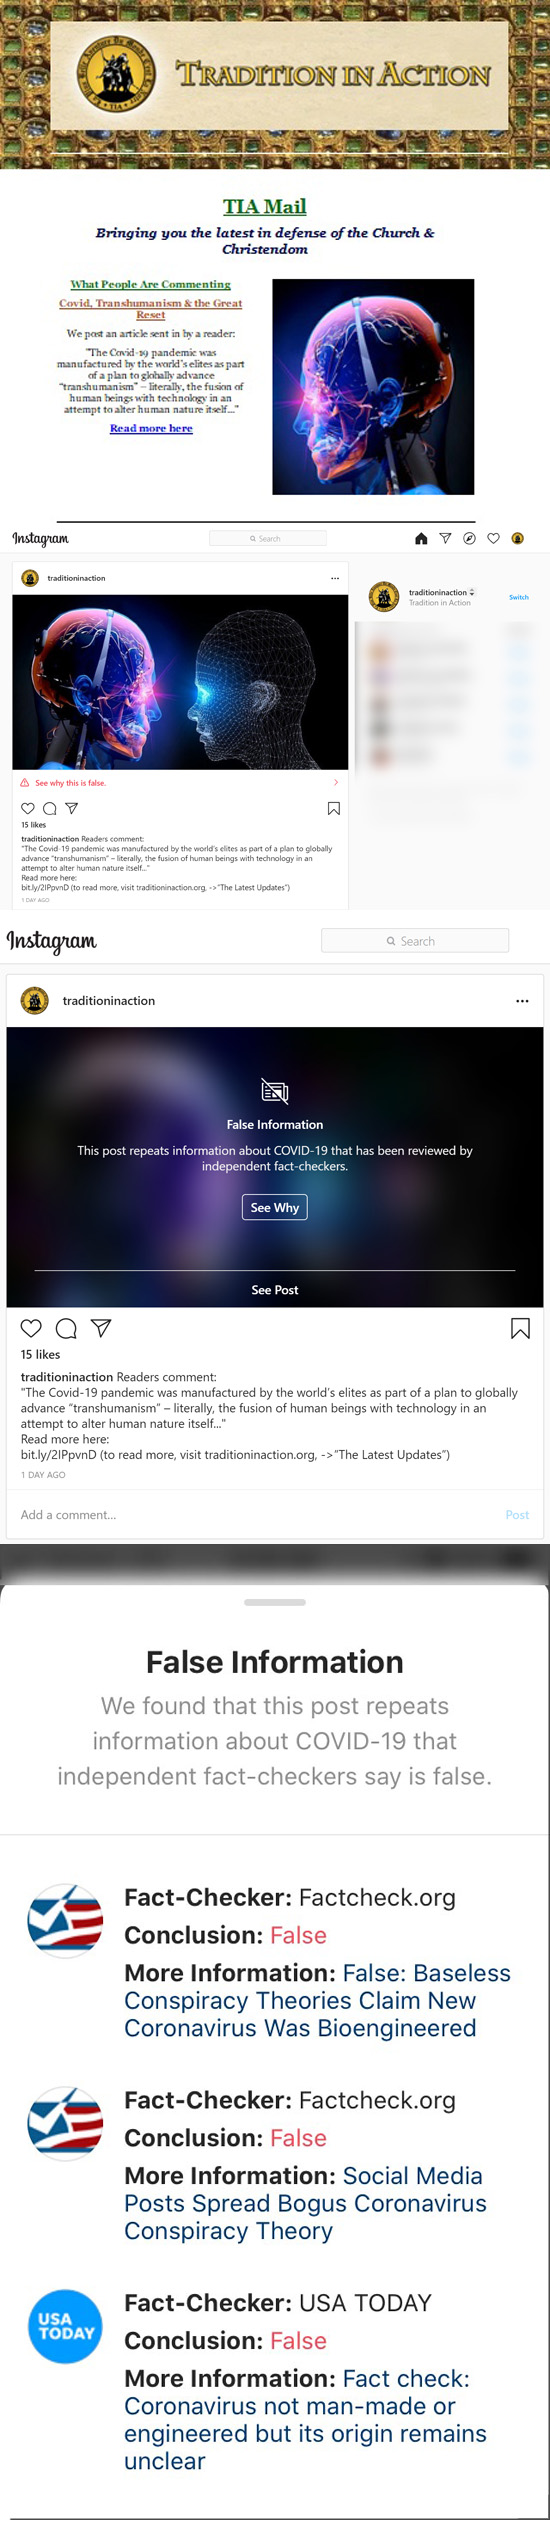 Instagram bans TIA post